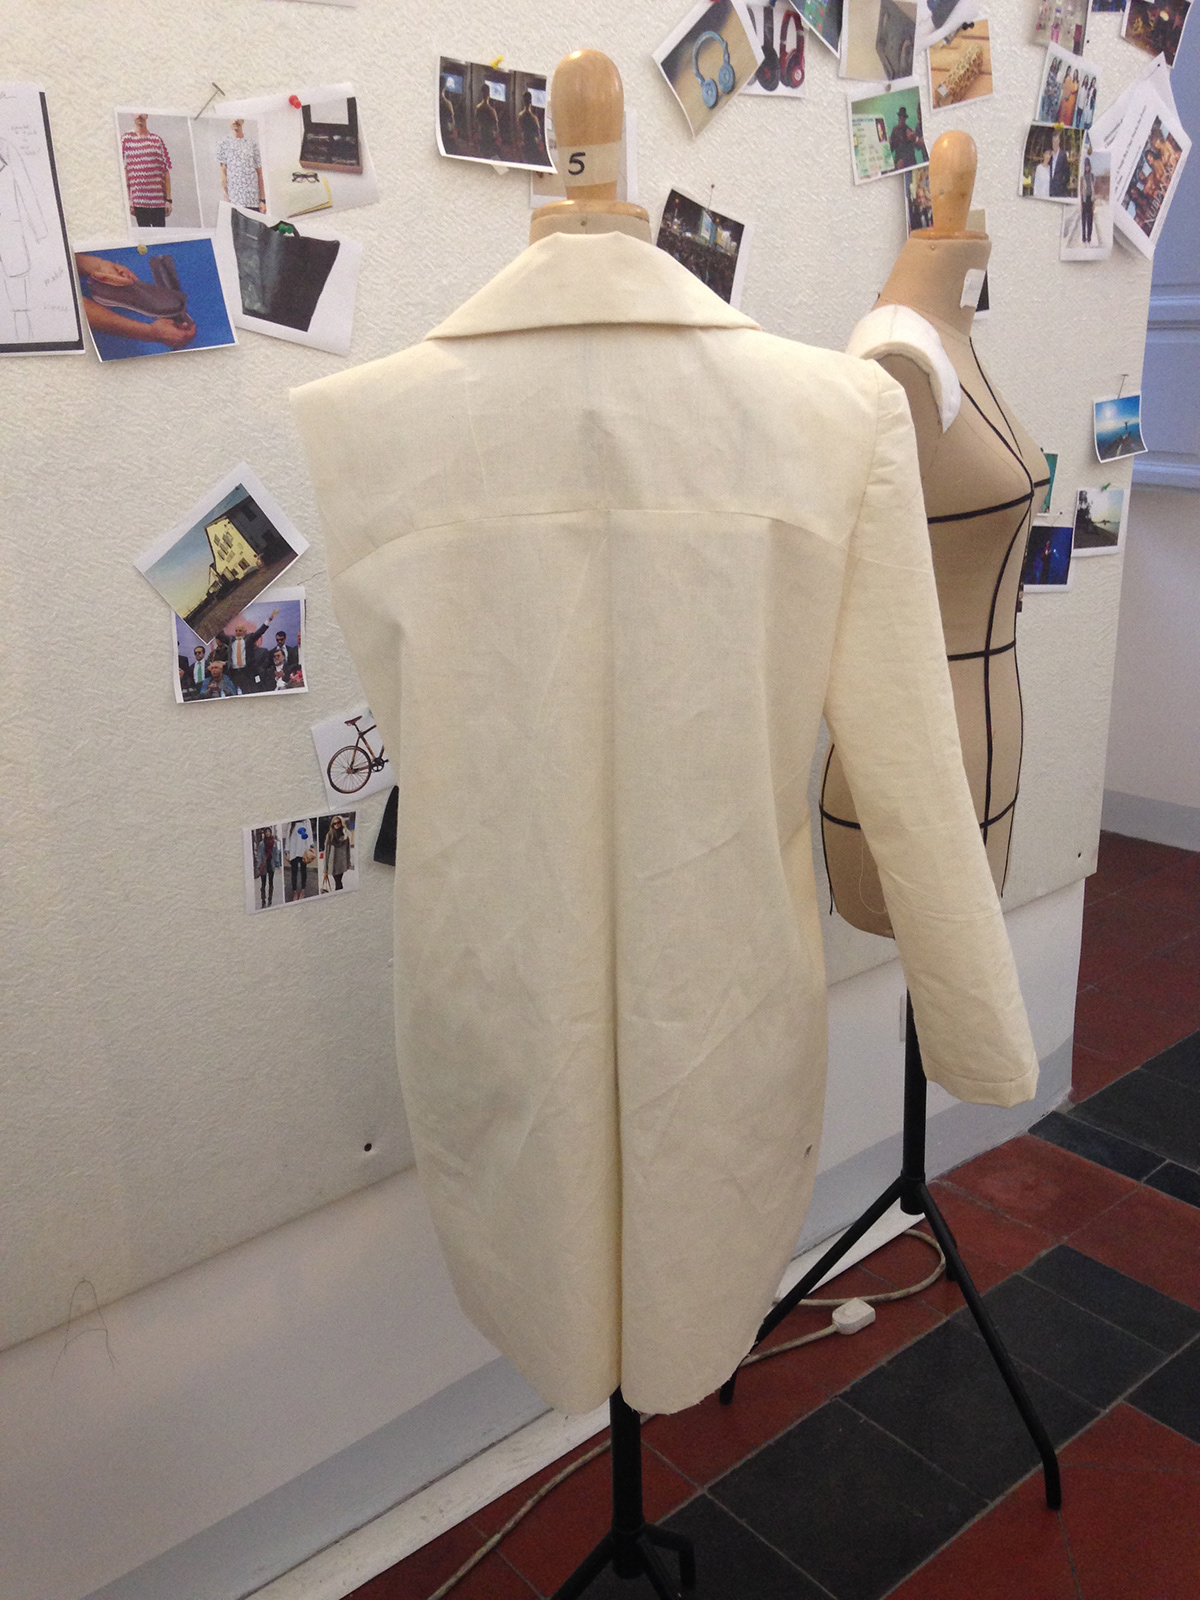 fashiondesign wool leather jacket patterndevelopment patternmaking design muslin